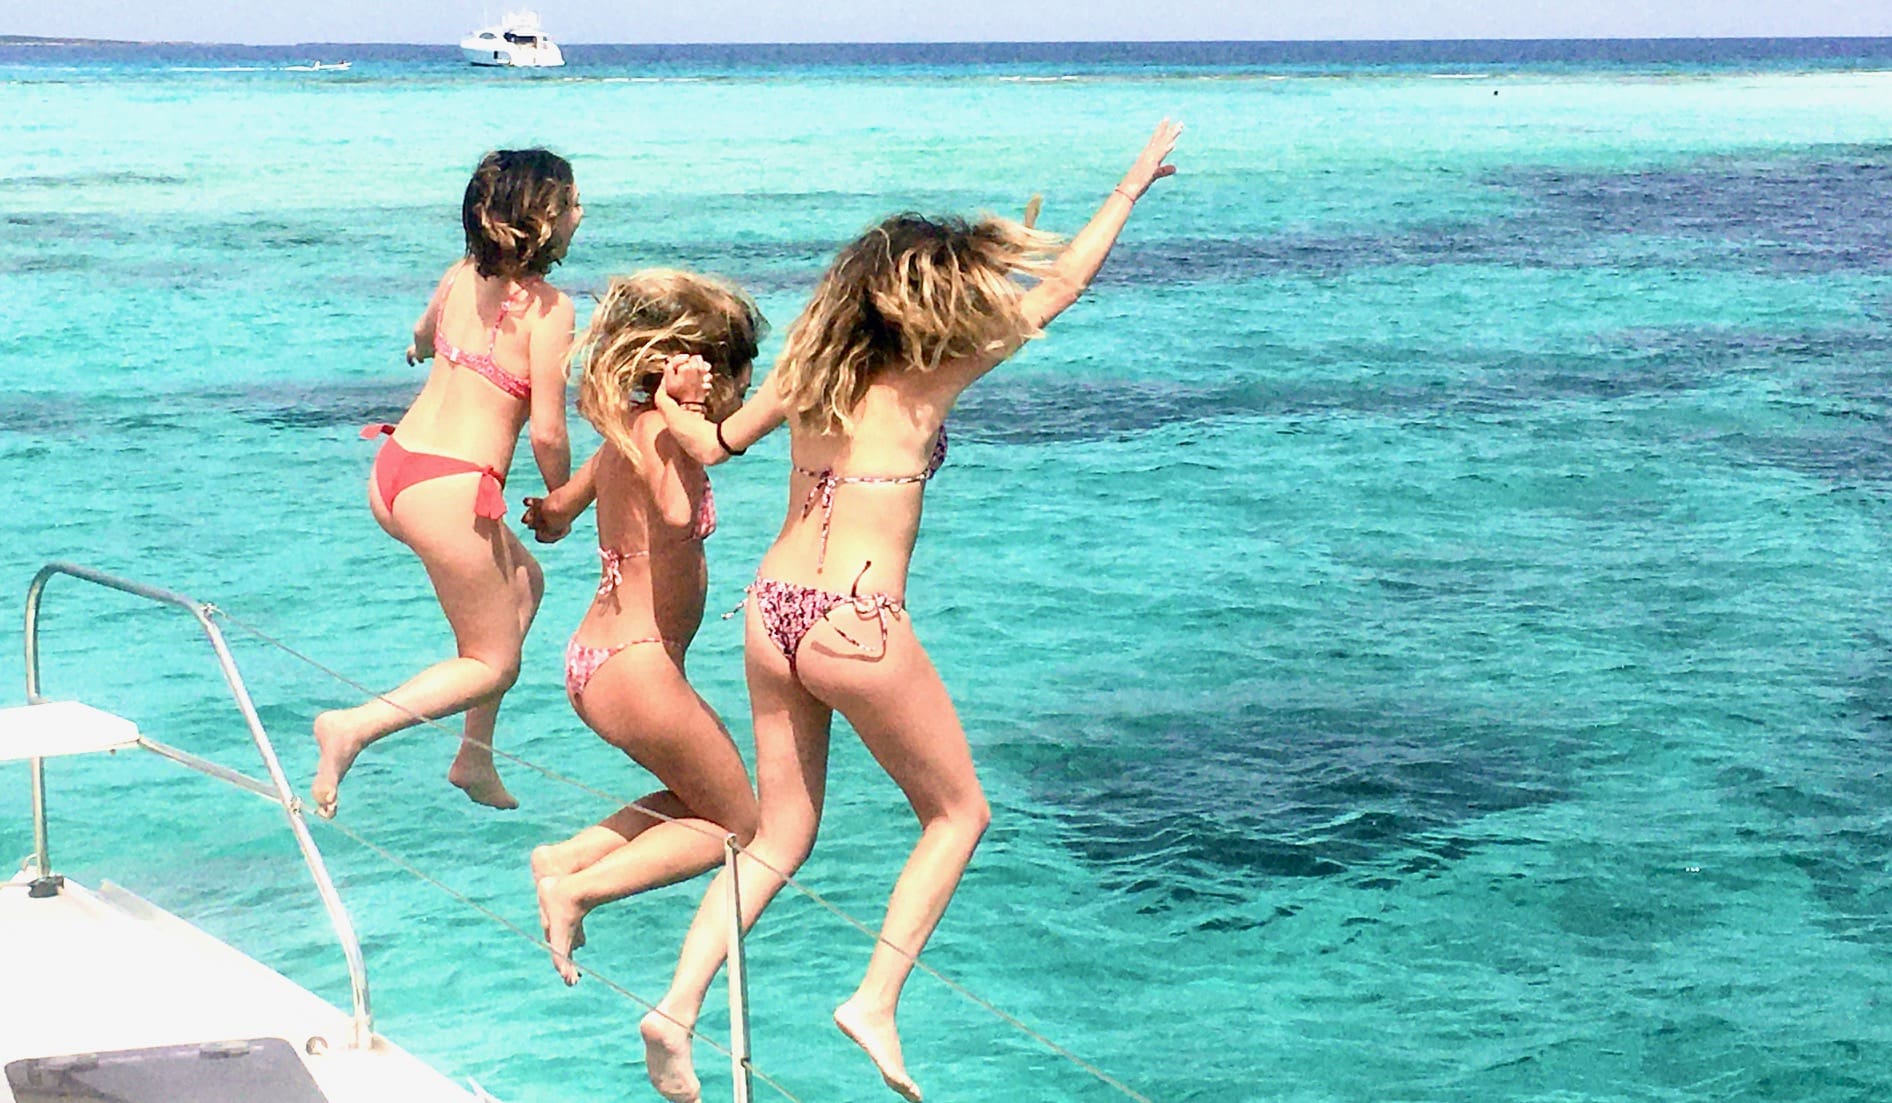 Alquilar catamaran en Ibiza para un día, chicas saltando por la borda